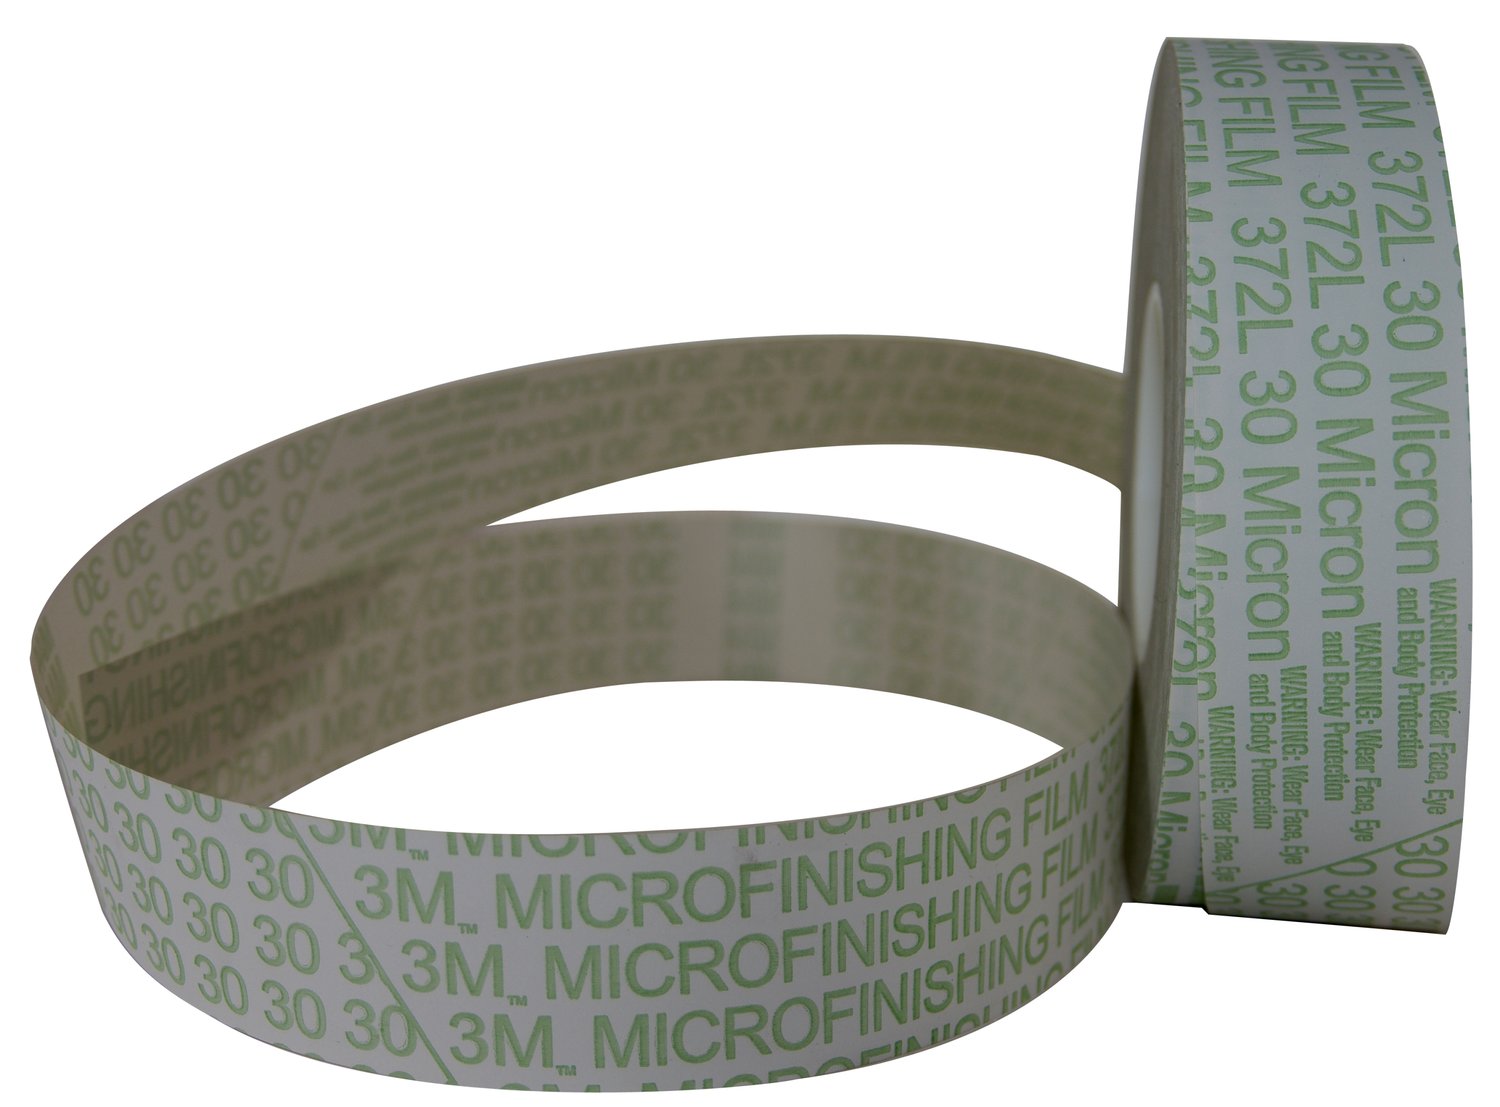 7010508982 - 3M Microfinishing Film Belt 362L, 60 Mic 3MIL, 2 in x 48 in